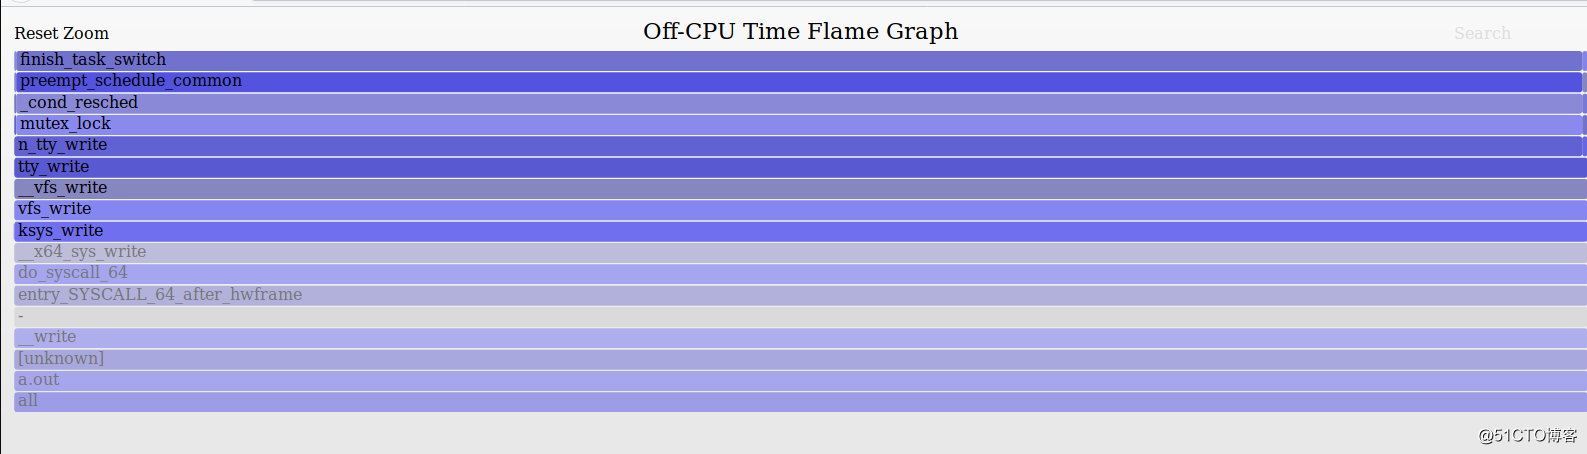 宋宝华： 用off-cpu火焰图进行Linux性能分析